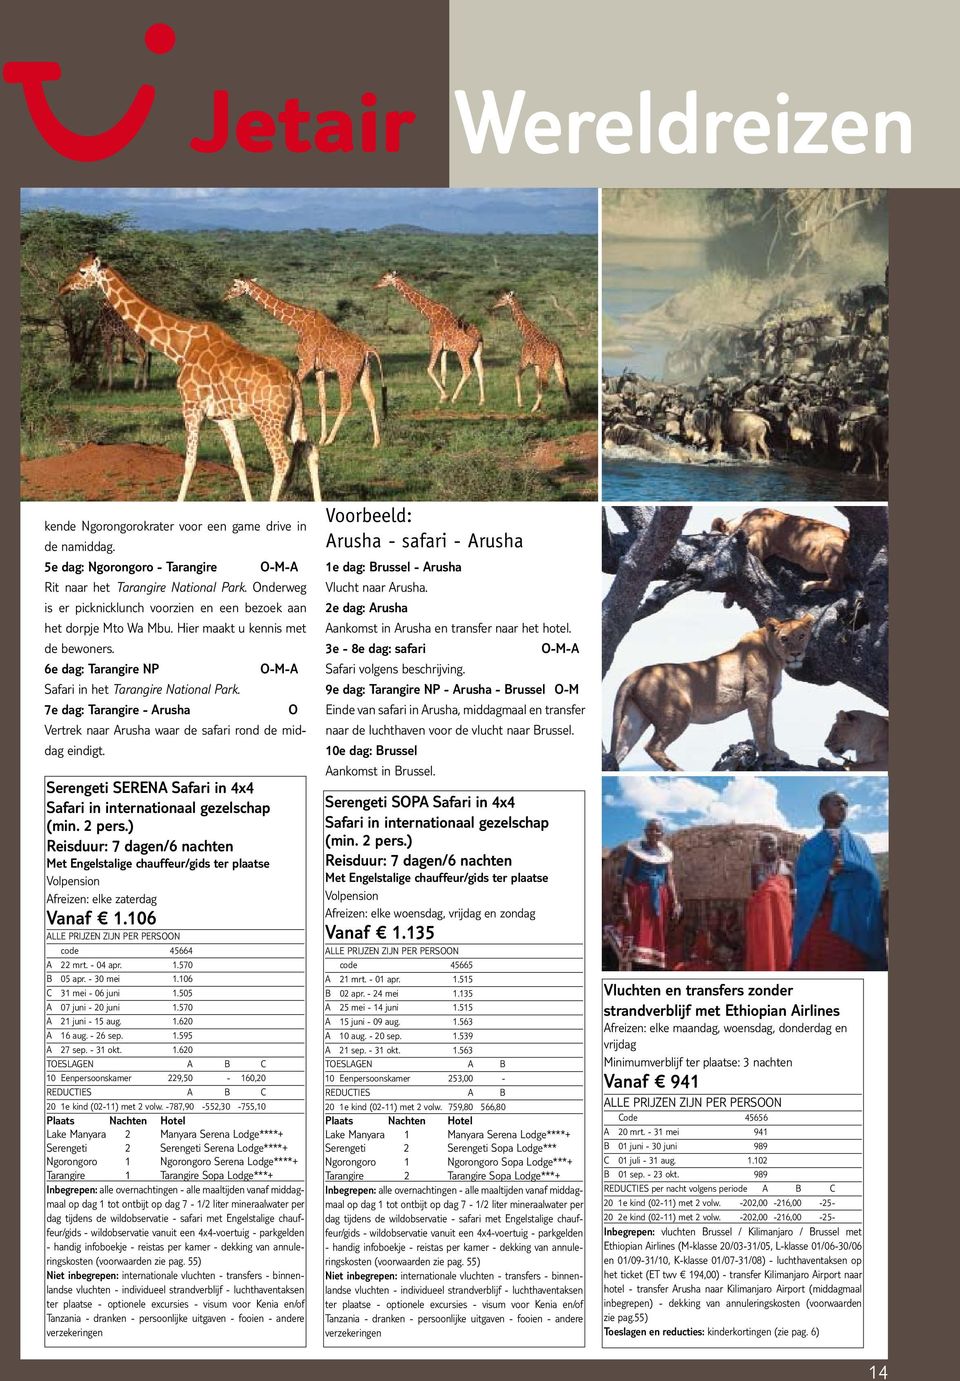 7e dag: Tarangire - Arusha O Vertrek naar Arusha waar de safari rond de middag eindigt. Serengeti SERENA Safari in 4x4 Reisduur: 7 dagen/6 nachten Afreizen: elke zaterdag Vanaf 1.